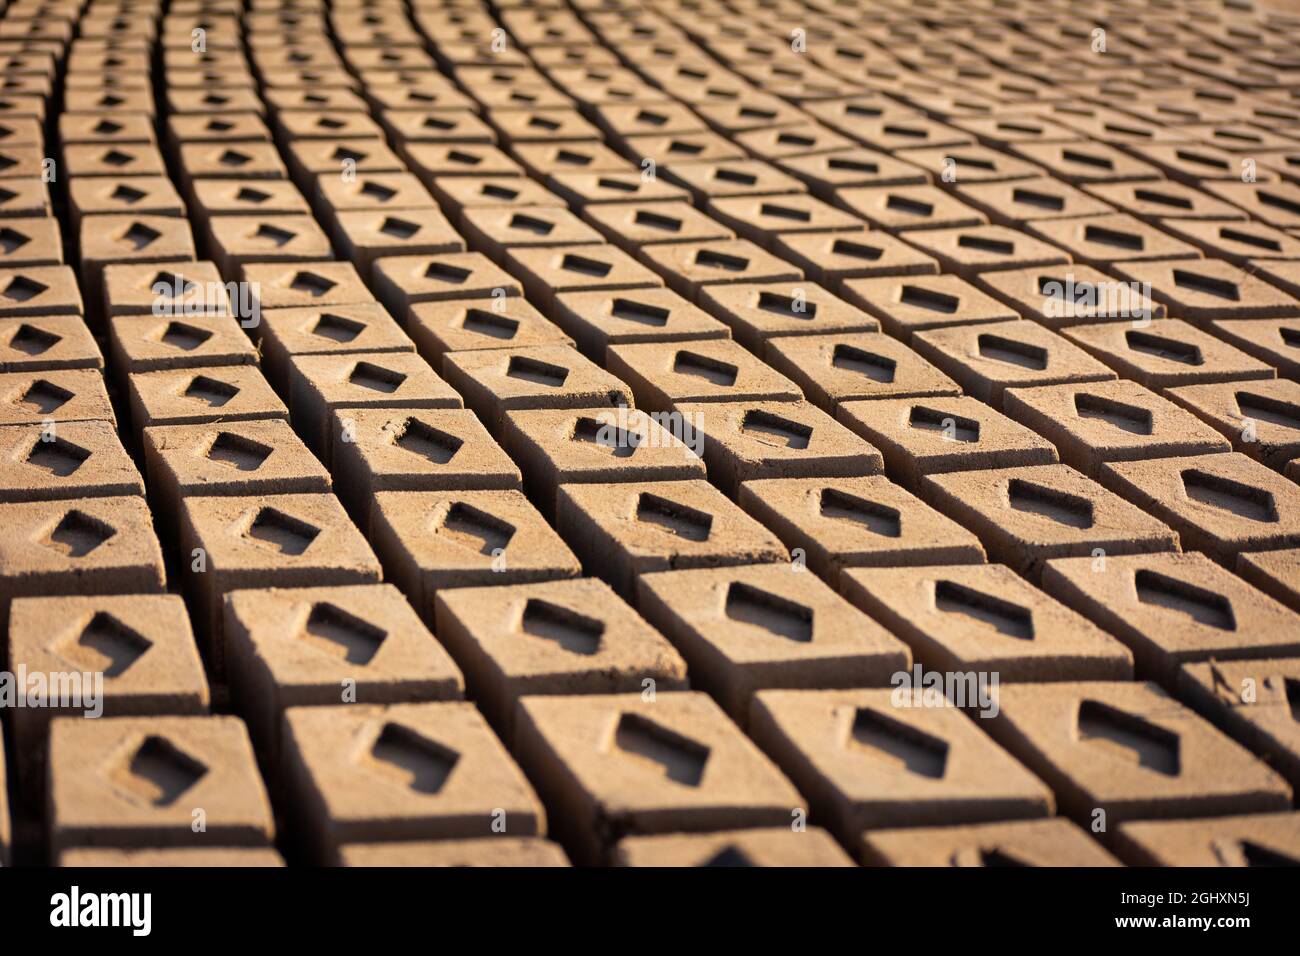 Handgemachte Ziegel aus nassem Ton und Schlamm werden vor dem Brennvorgang zum Trocknen aufbewahrt. Traditionelle Herstellung von Ziegelsteinen in Indien. Stockfoto